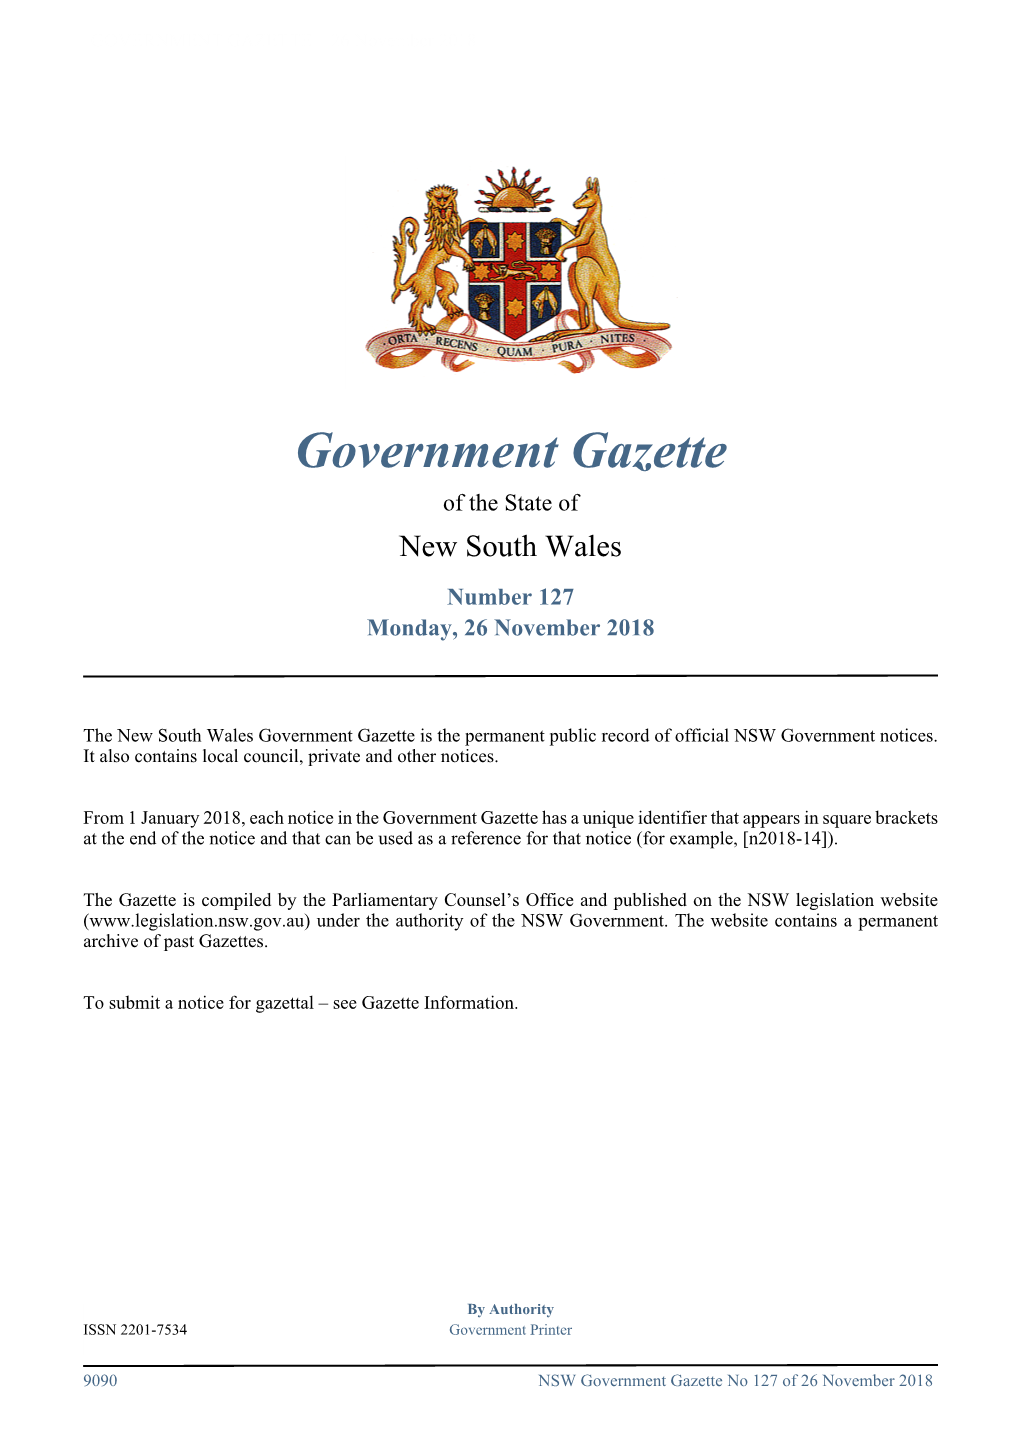 GOVERNMENT GAZETTE – 26 November 2018